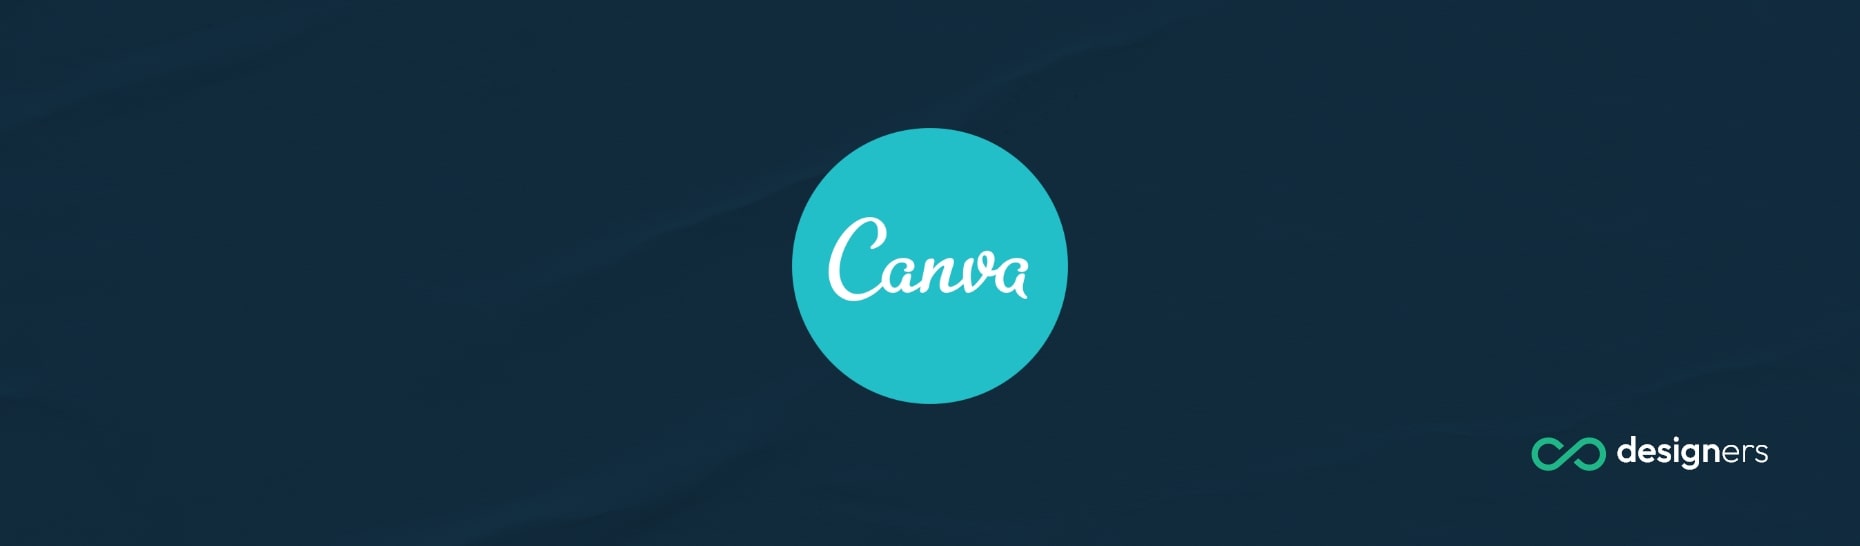 Is Canva an Innovative Company?